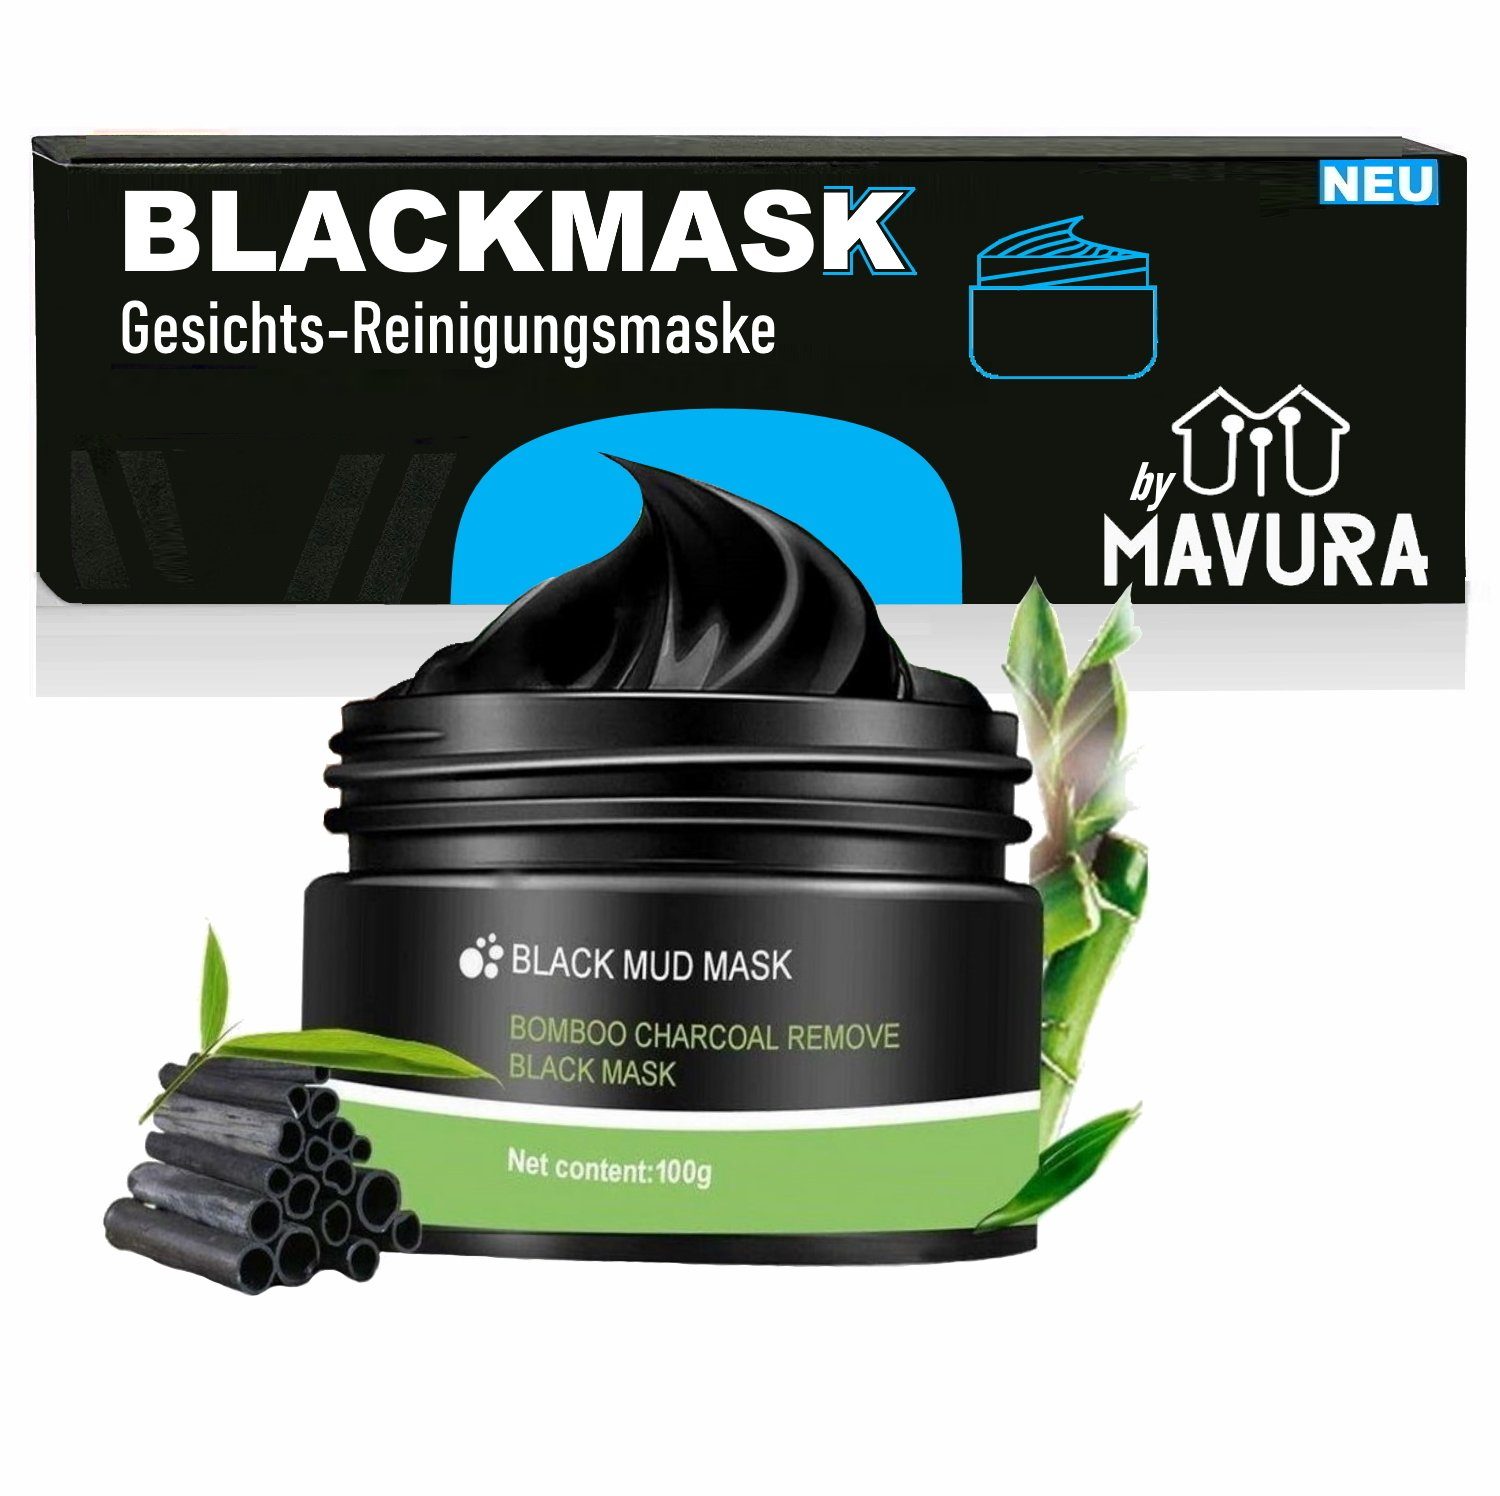 MAVURA Gesichts-Reinigungsmaske BLACKMASK Blackhead Mask schwarze Bambus Gesichtsmaske 1KG/148€, Anti Pickel Mitesser Gesichts Peel Off Peeling Aktivkohle